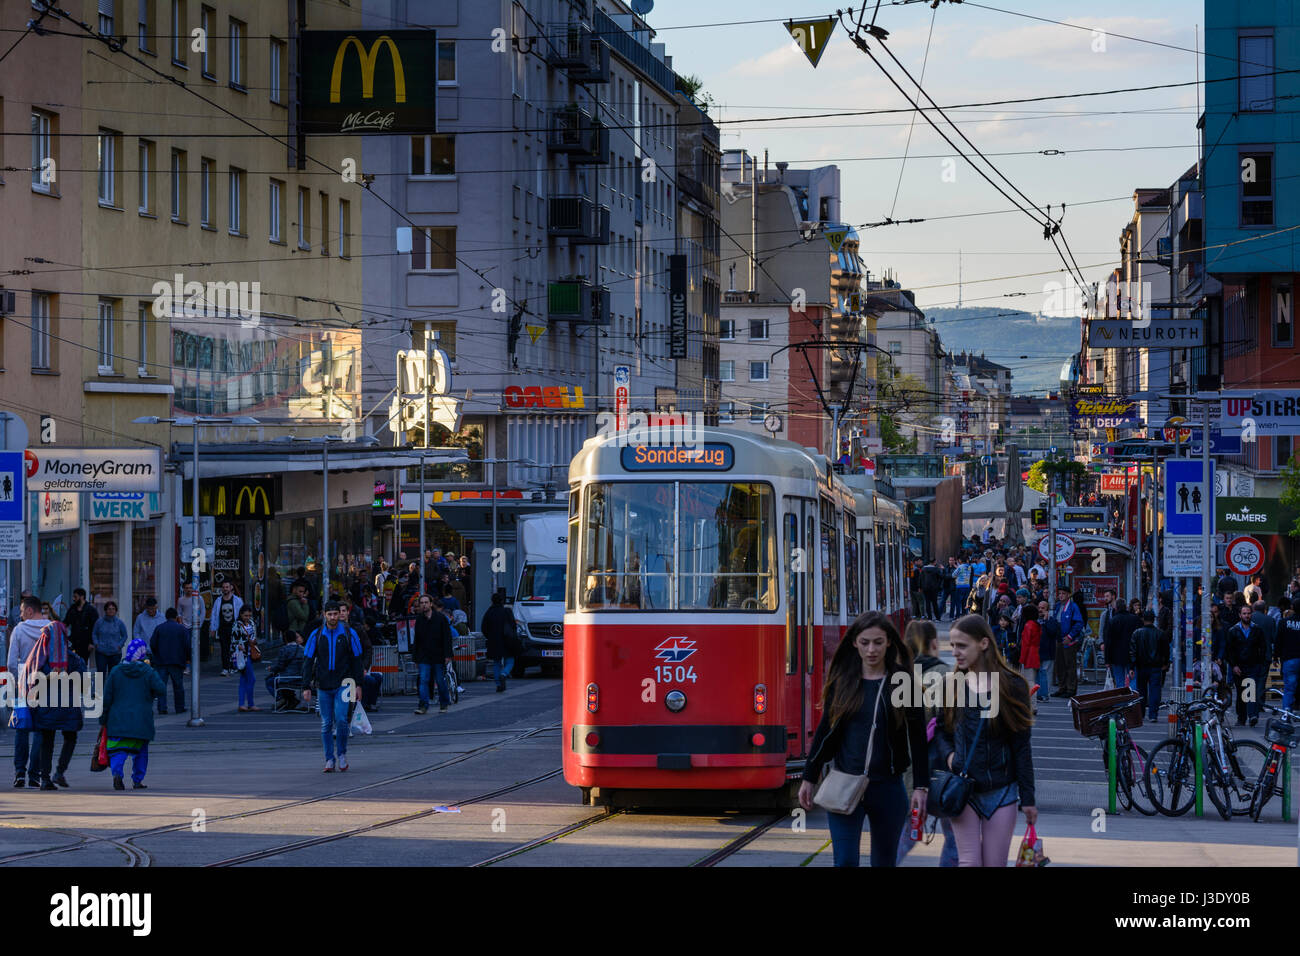 Favoritenstraße rue, tramway, personnes, vue de Kahlenberg, Wien, Vienne, 10. Favoriten, Wien, Autriche Banque D'Images